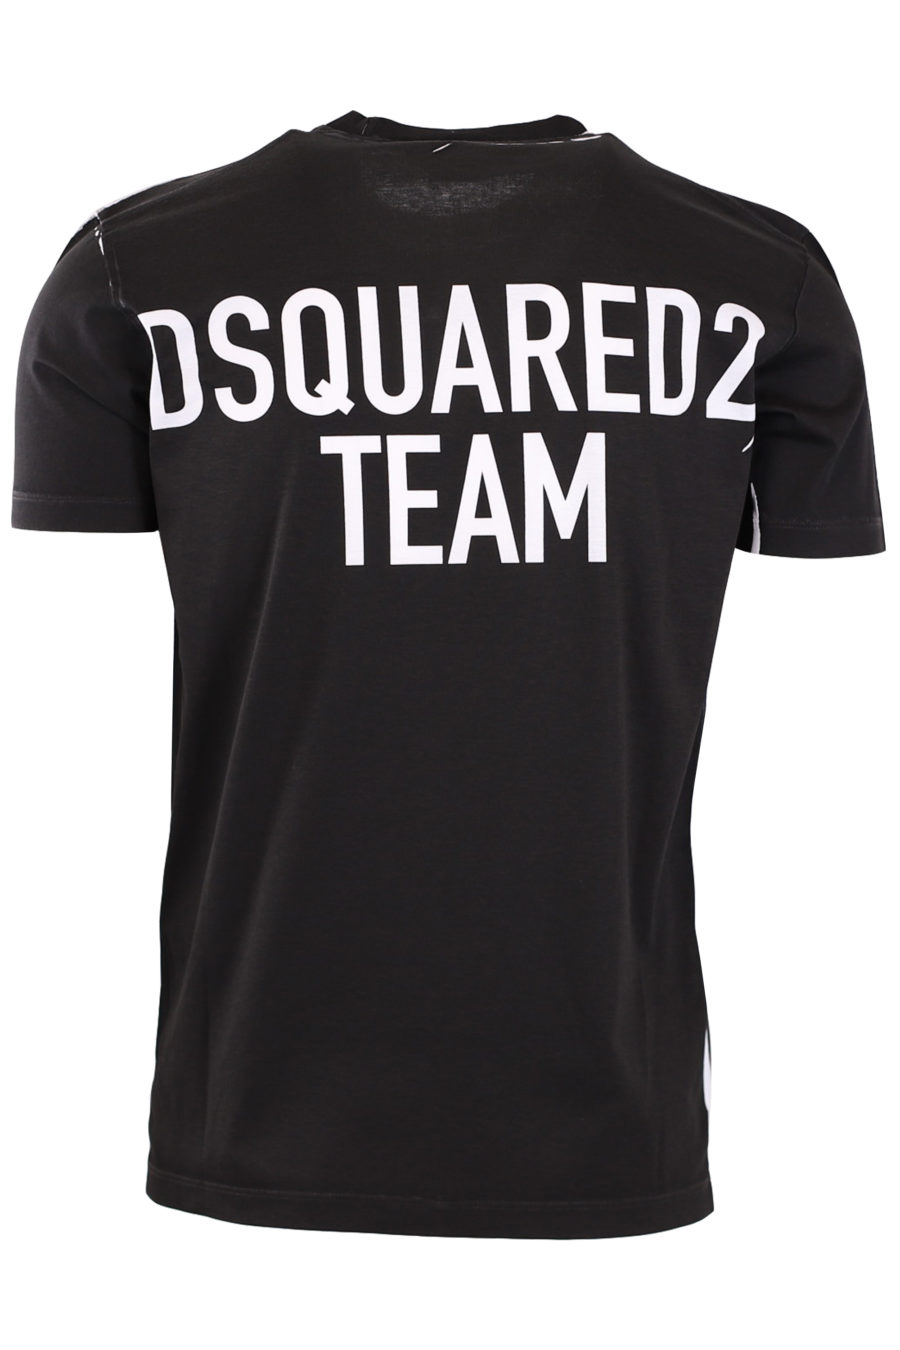 Schwarzes T-Shirt mit Aufschrift "Dsquared2 team" - 670bfdb17c0110044e1b27e967f45fcb45c5306f